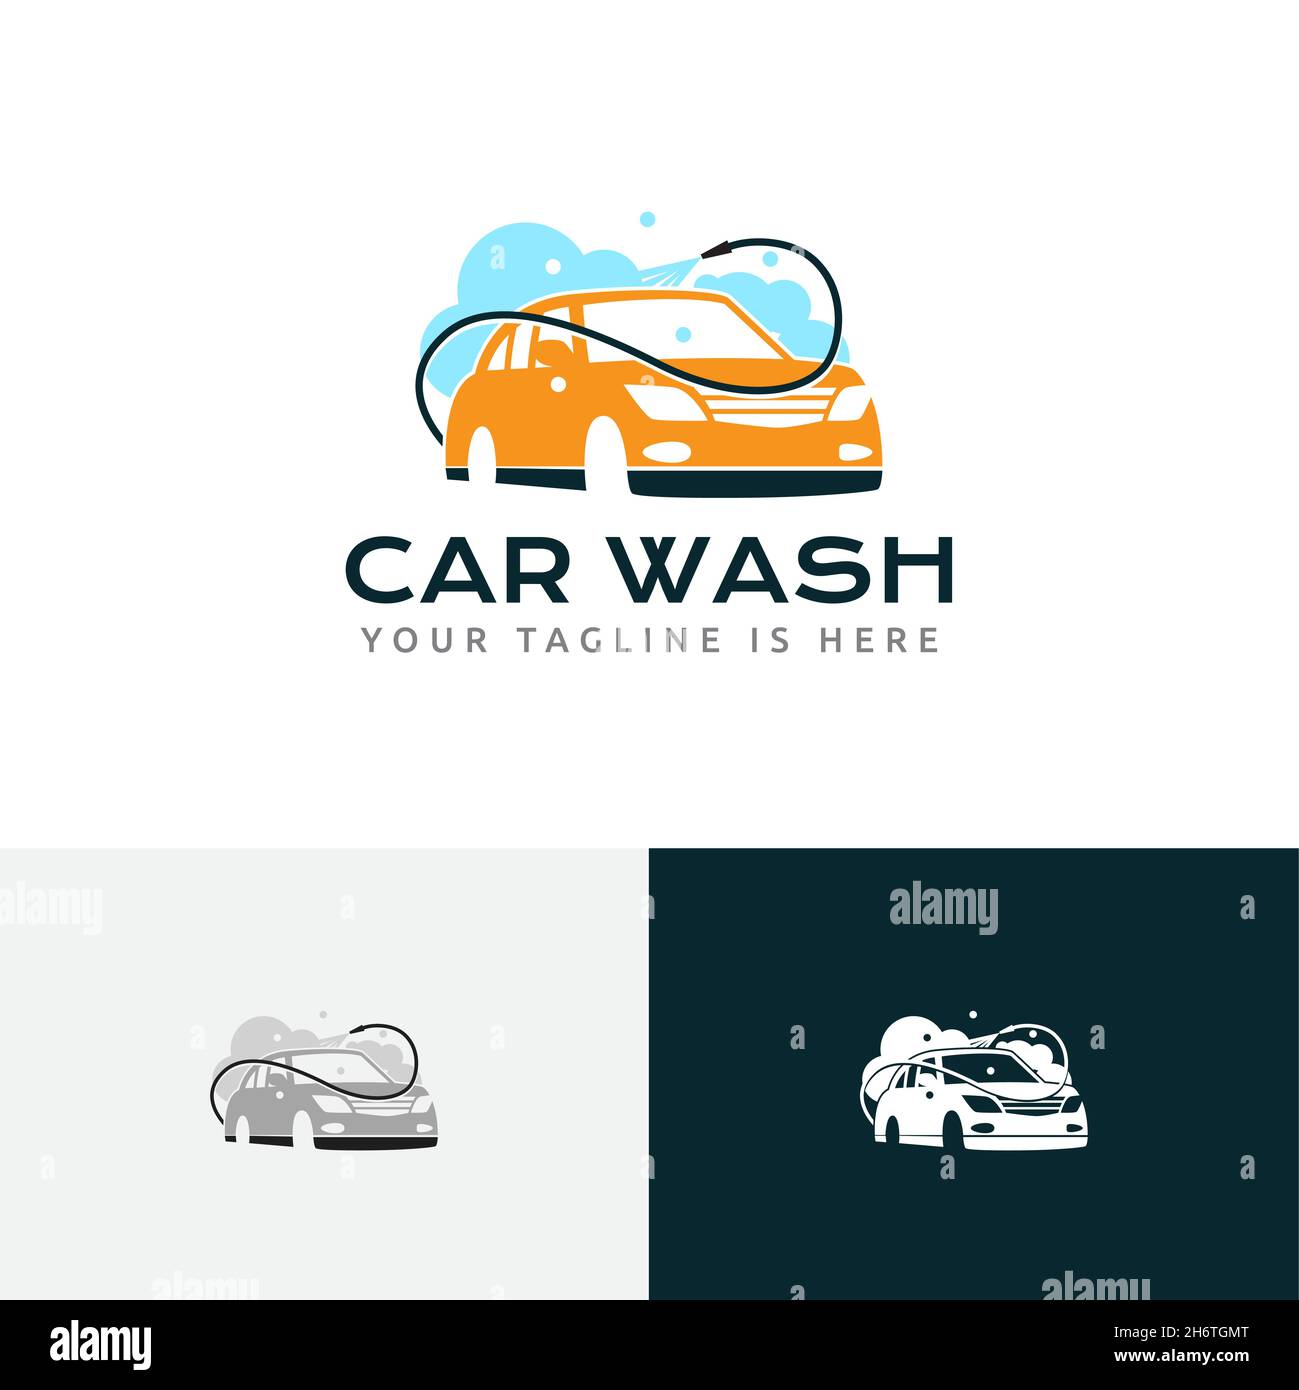 Carwash logo Template